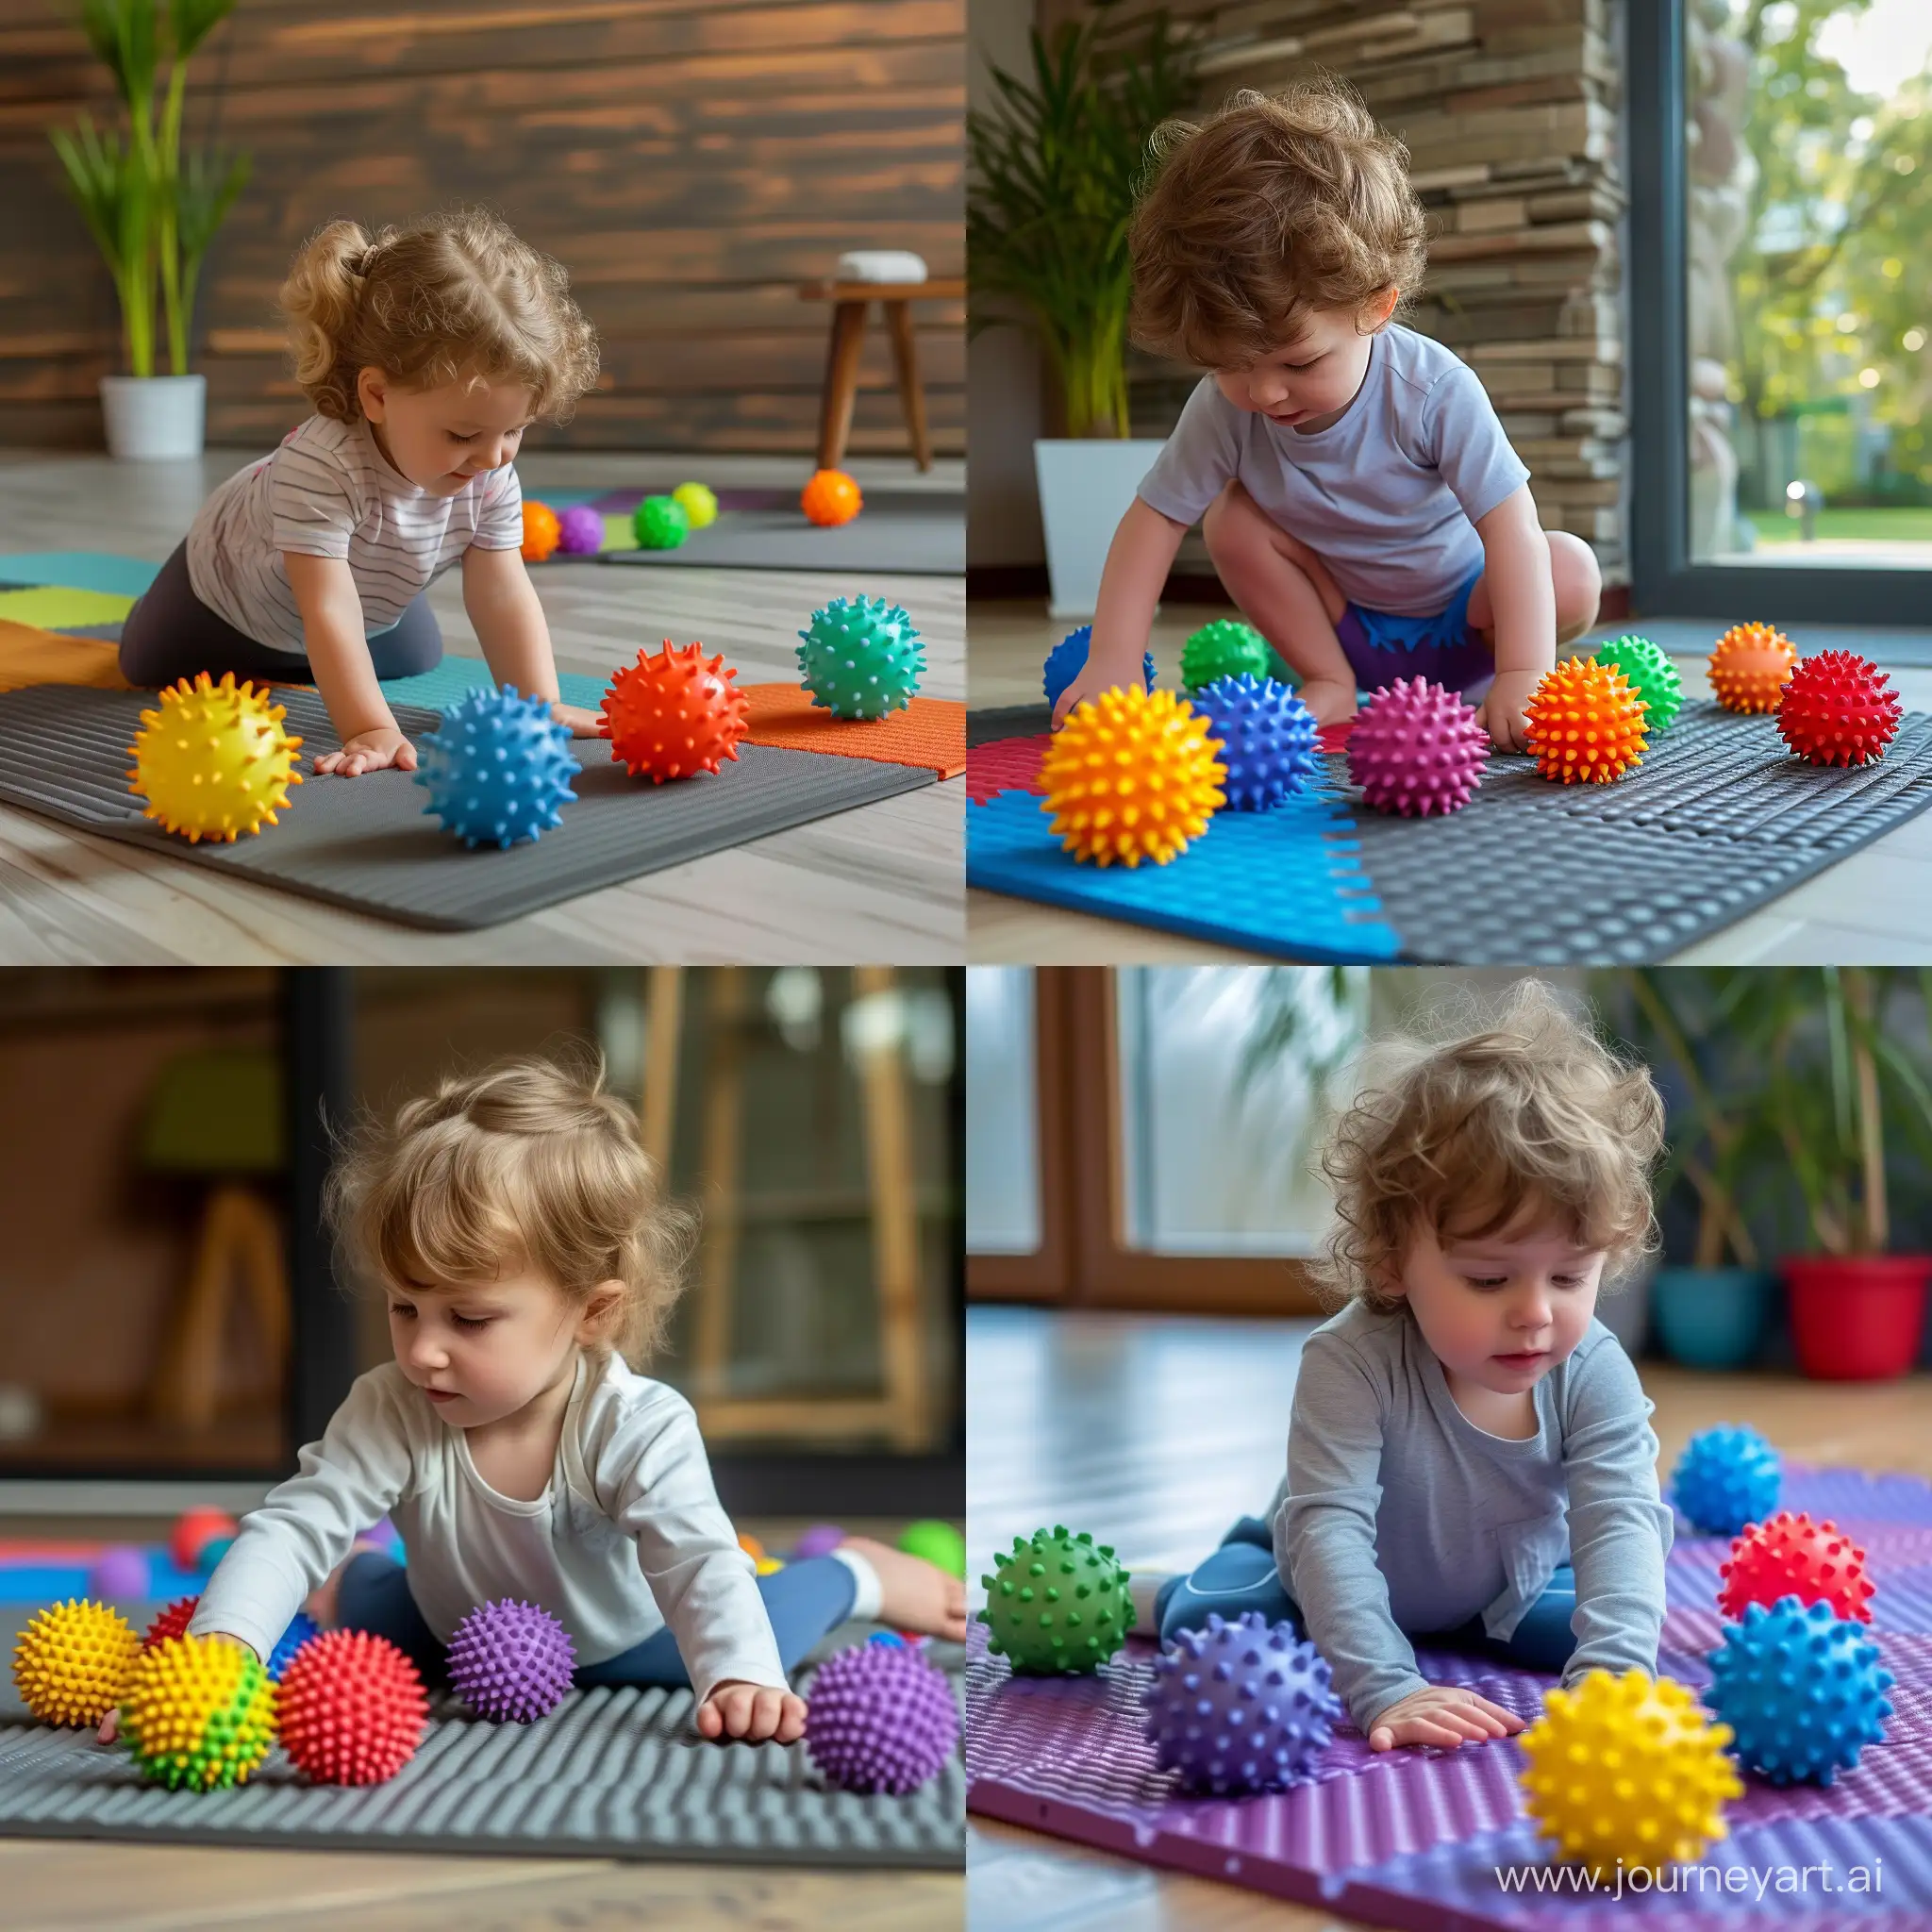 Ребенок 3 года, играет на коврике для фитнеса с цветными мячиками,  мячи с массажными шипами маленькие